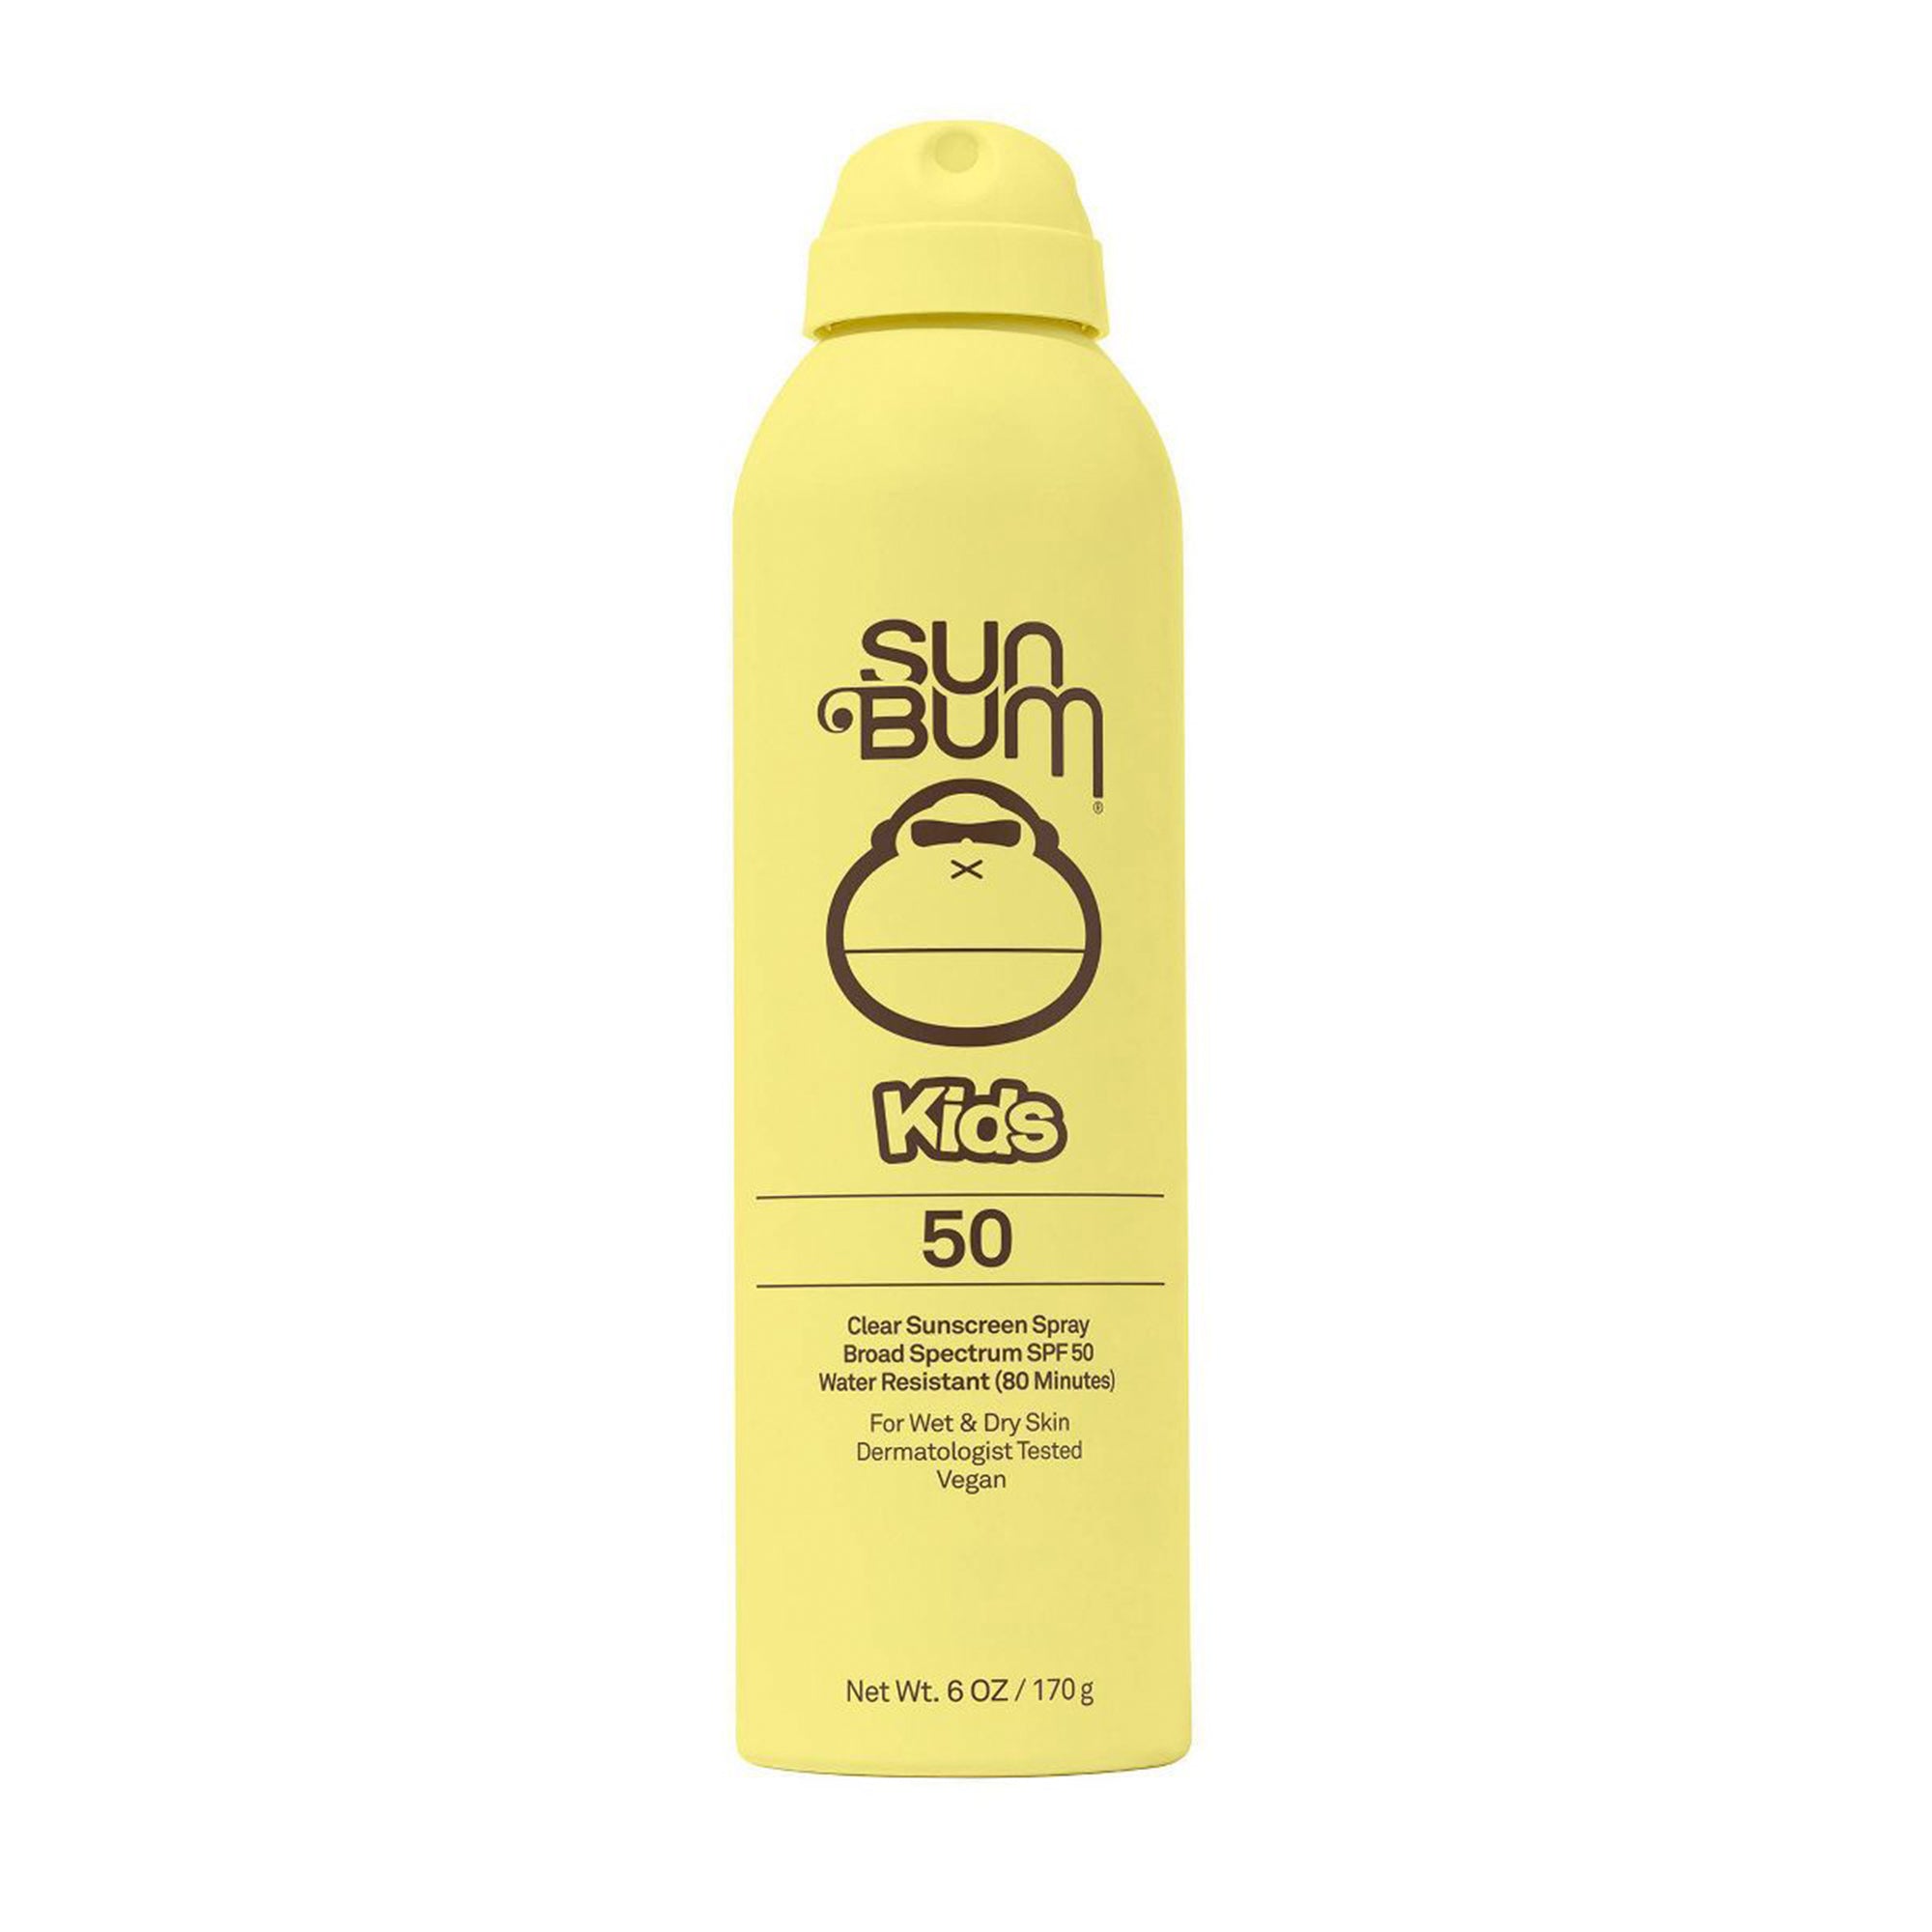 Sun Bum Kids' Sunscreen Spray SPF 50, 6oz